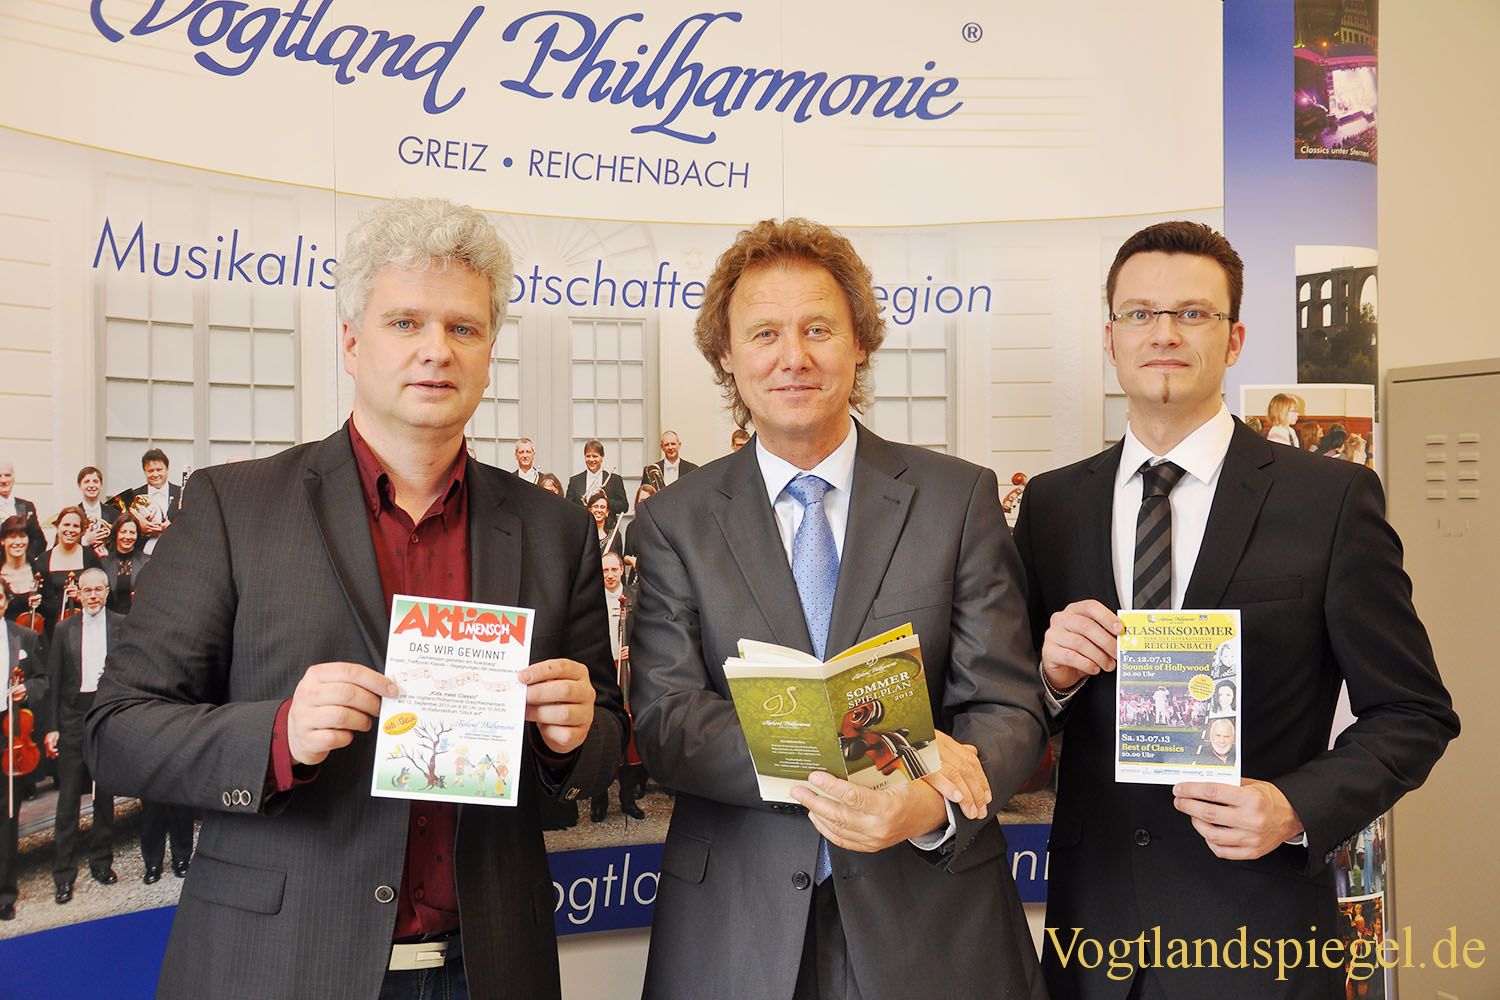 Vogtland Philharmonie Greiz/Reichenbach blickt auf ein erfolgreiches Jahr zurück und plant bereits die Sommerspielzeit 2013